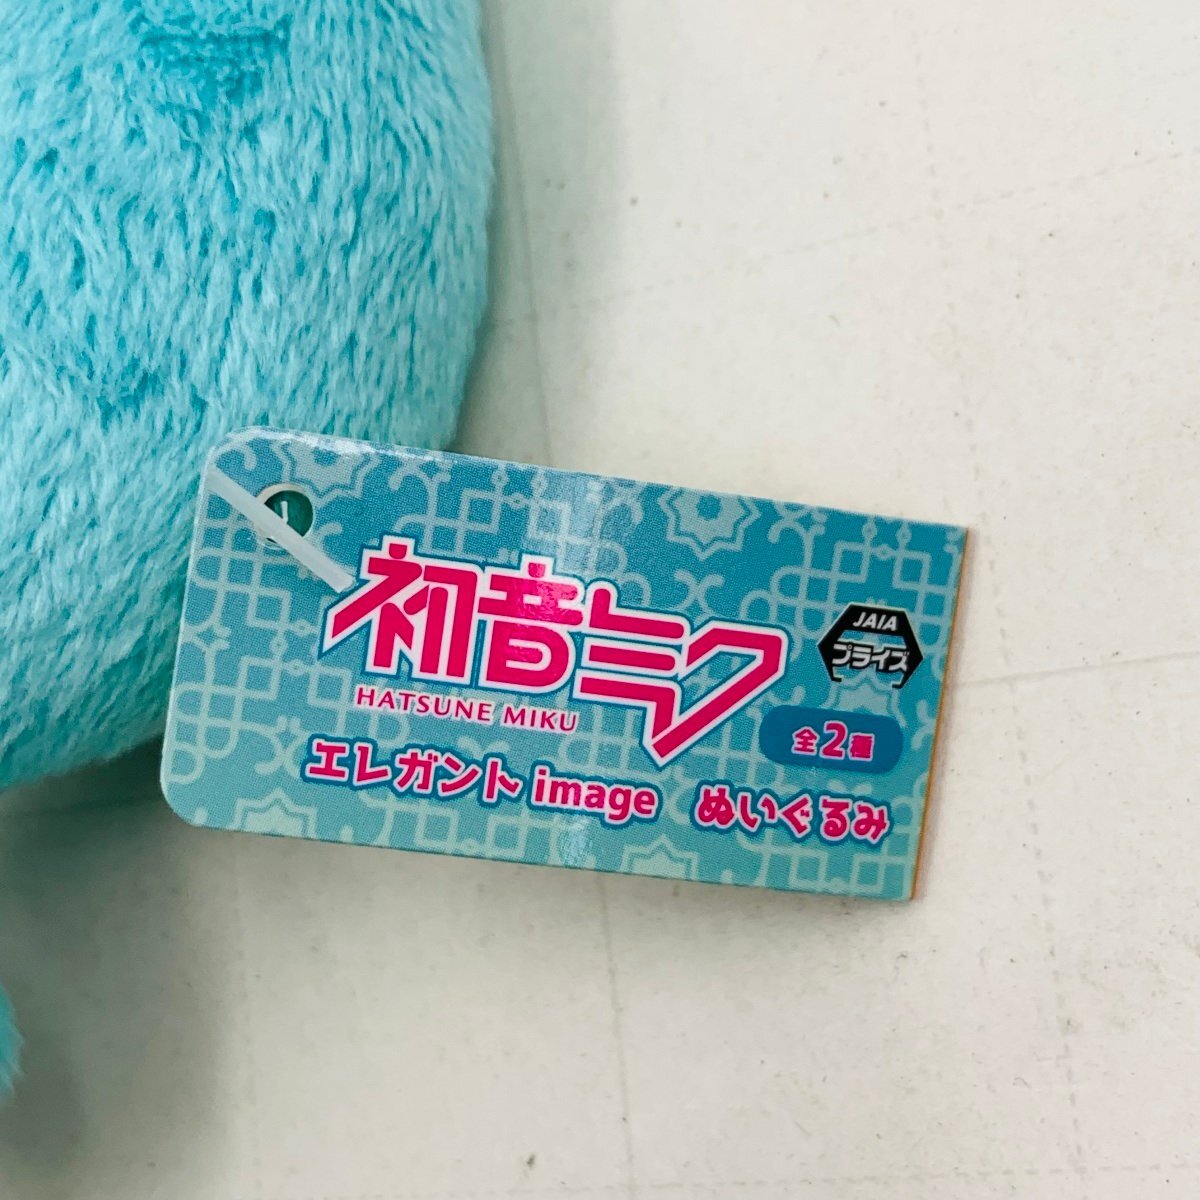  новый товар тугой - elegant image мягкая игрушка Hatsune Miku 2 вида комплект 